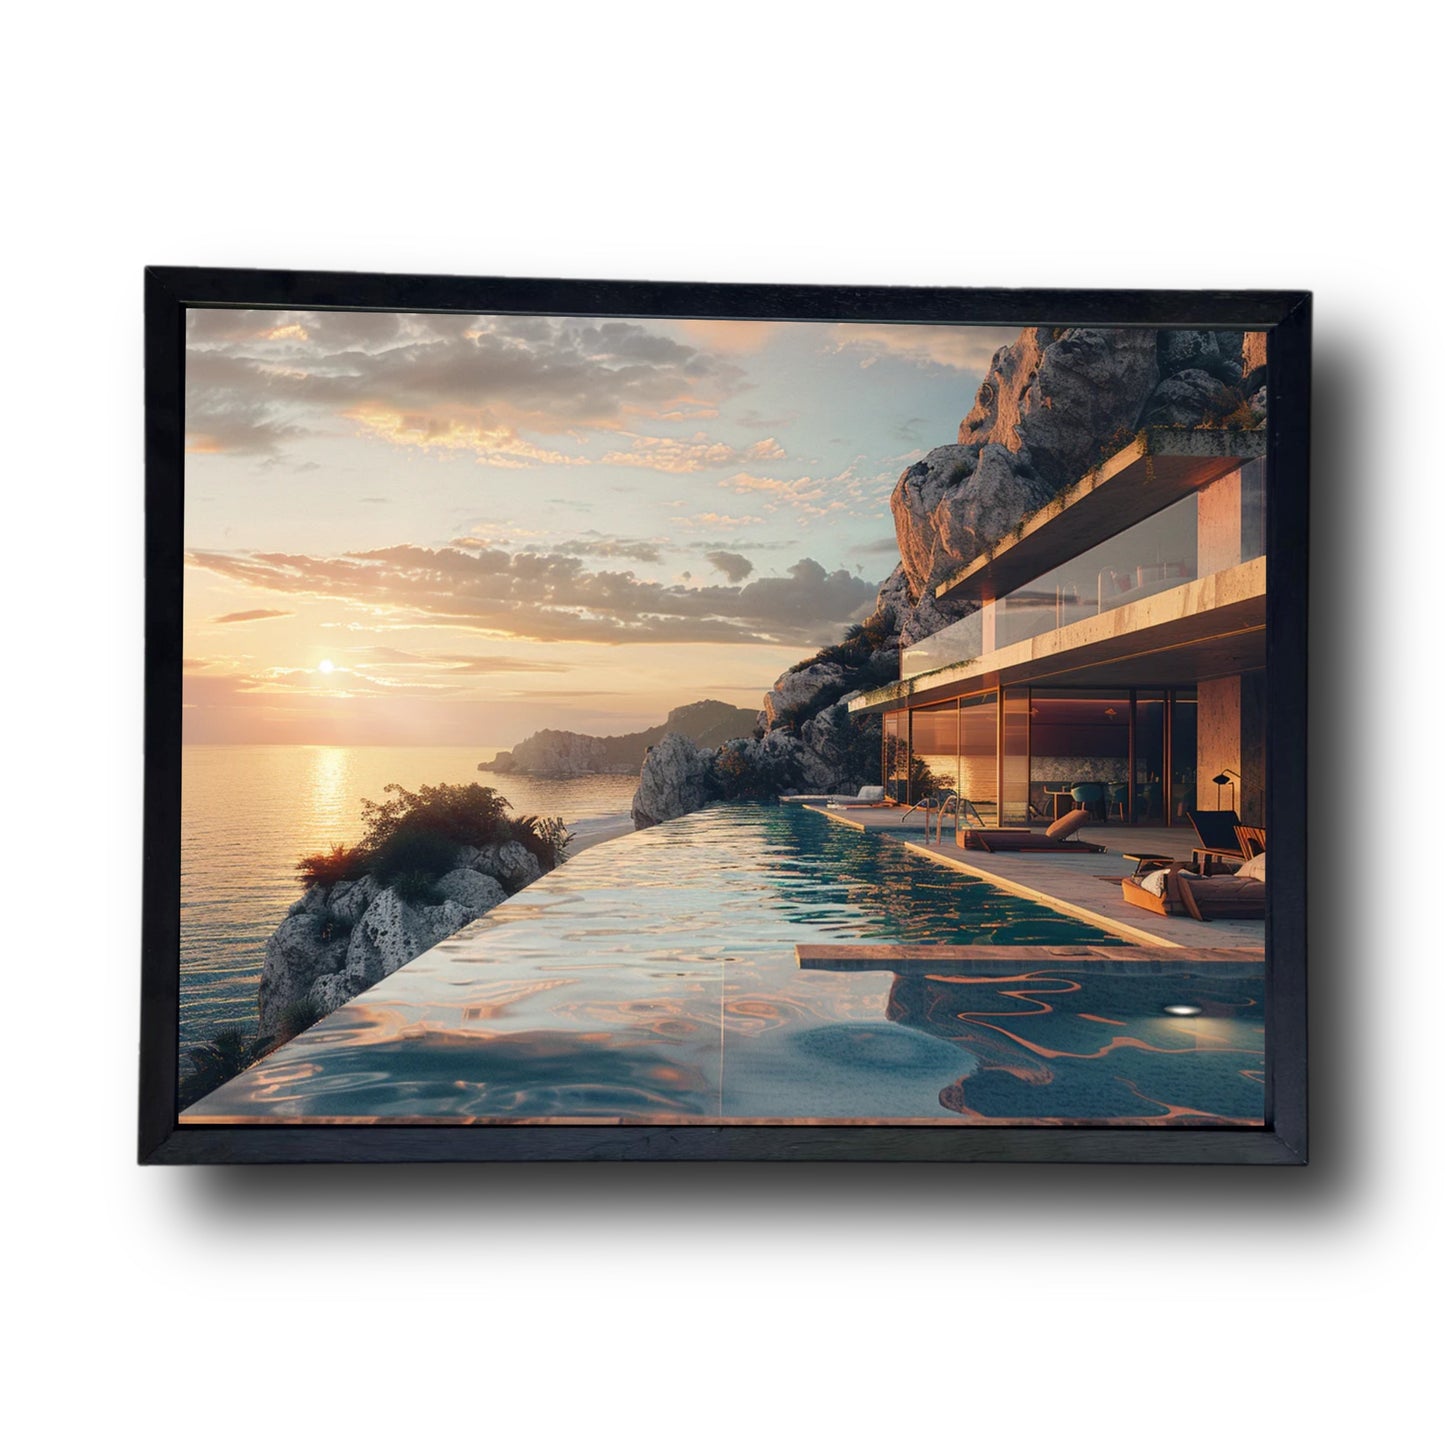 Pool villa sunset